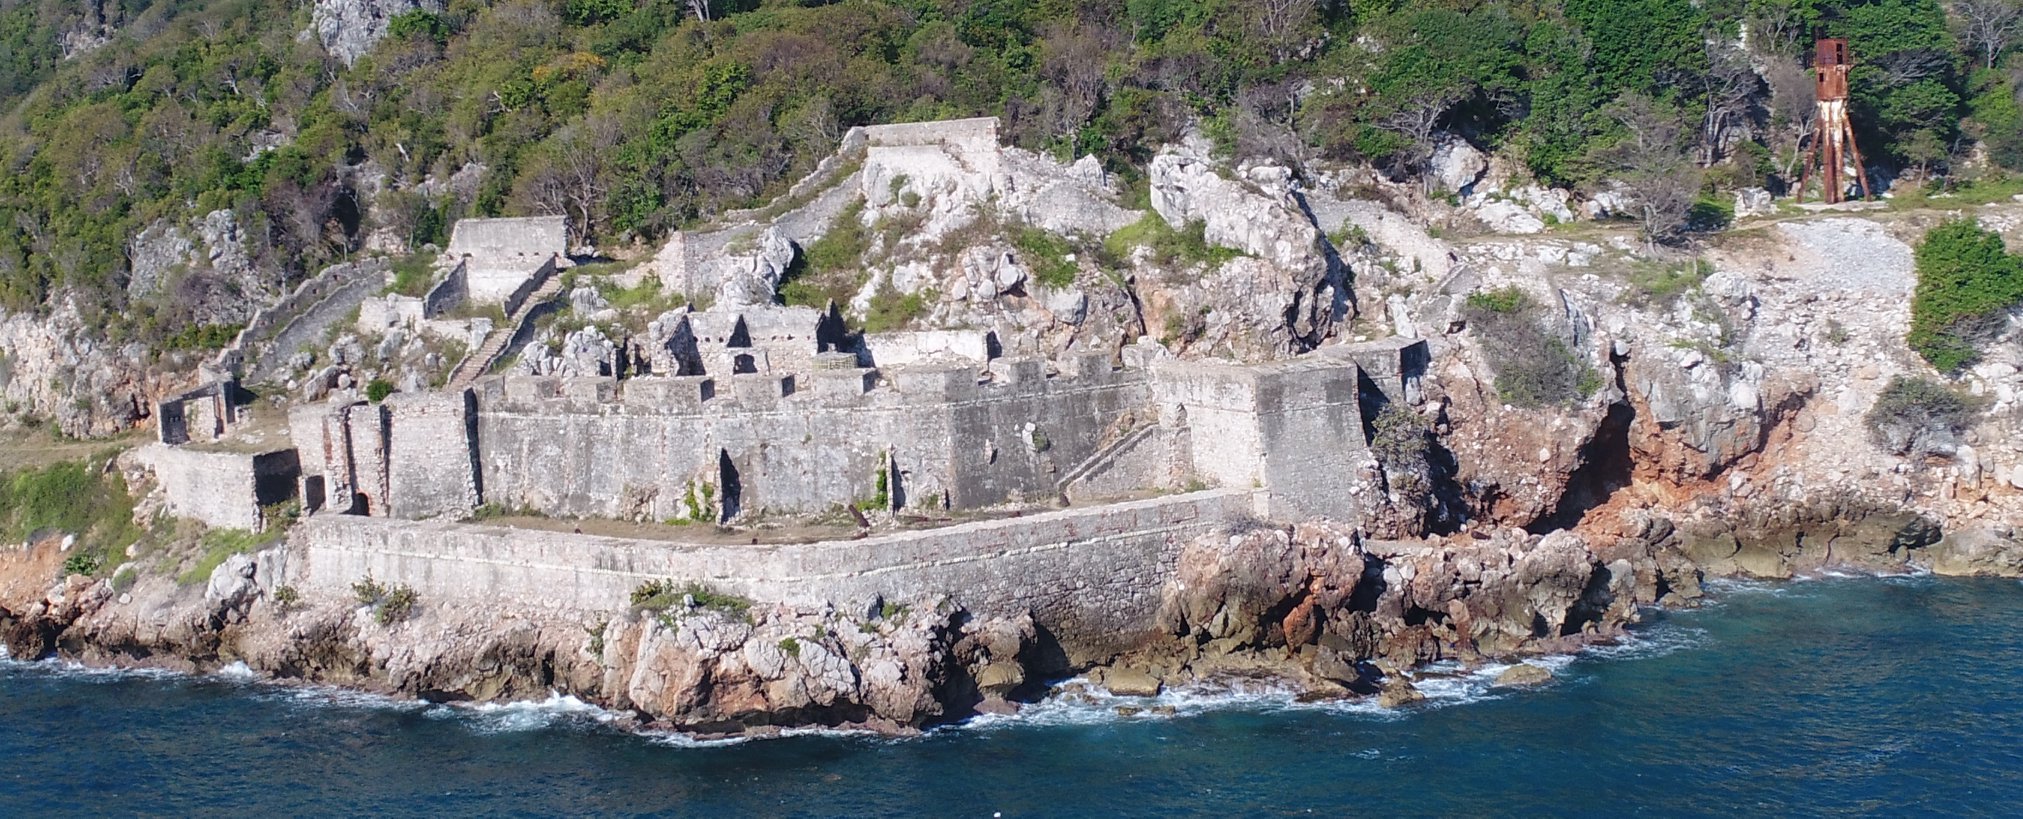 Fort Picolet IV